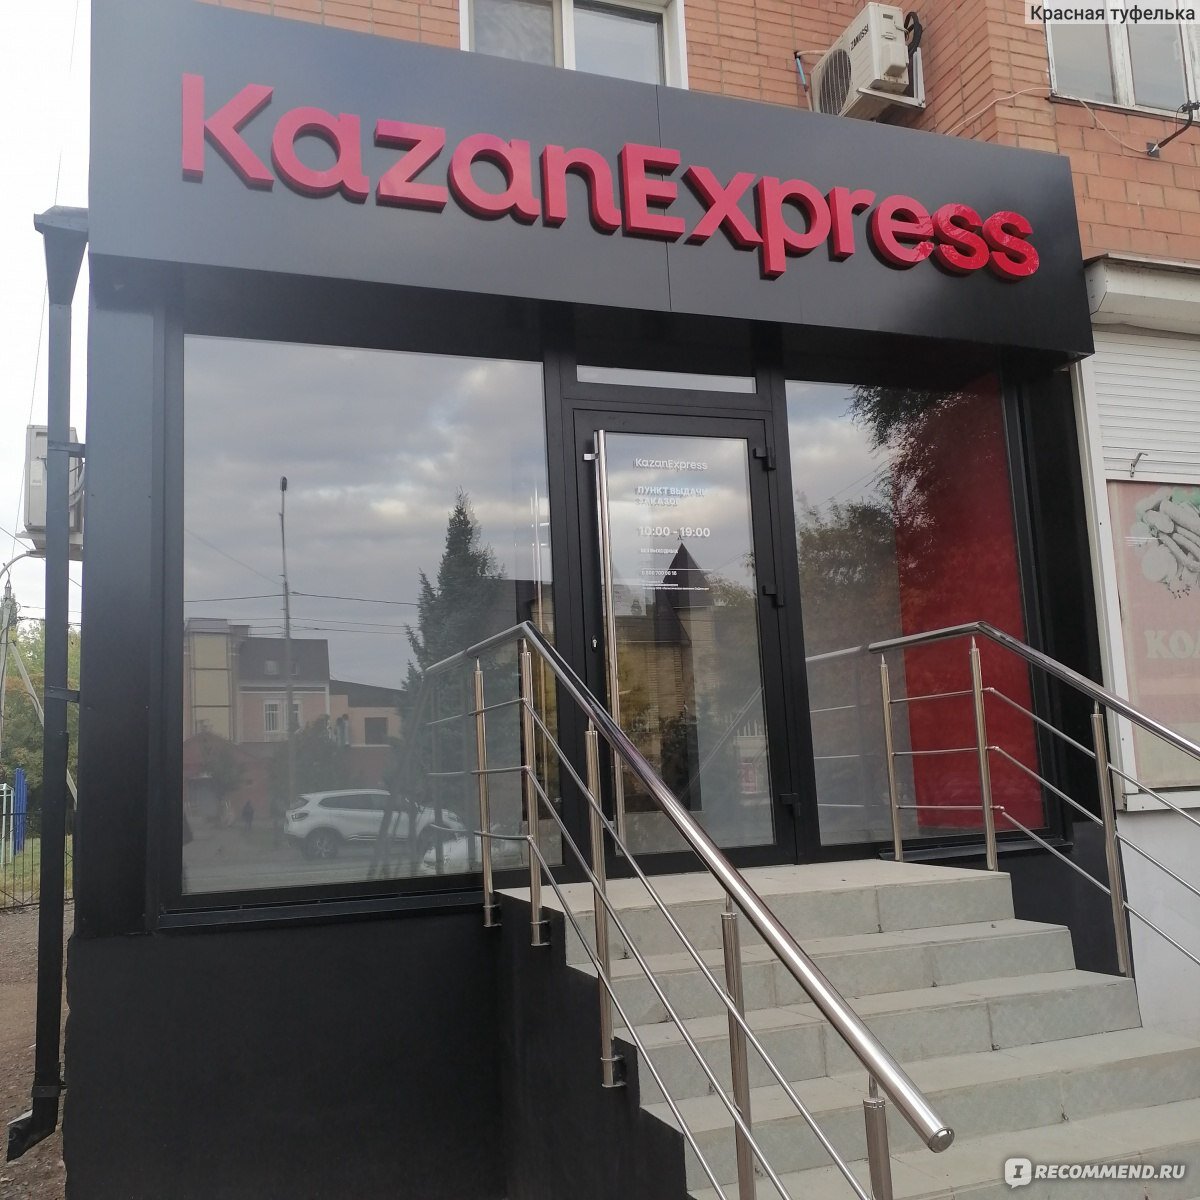 Казань экспресс телефон горячей